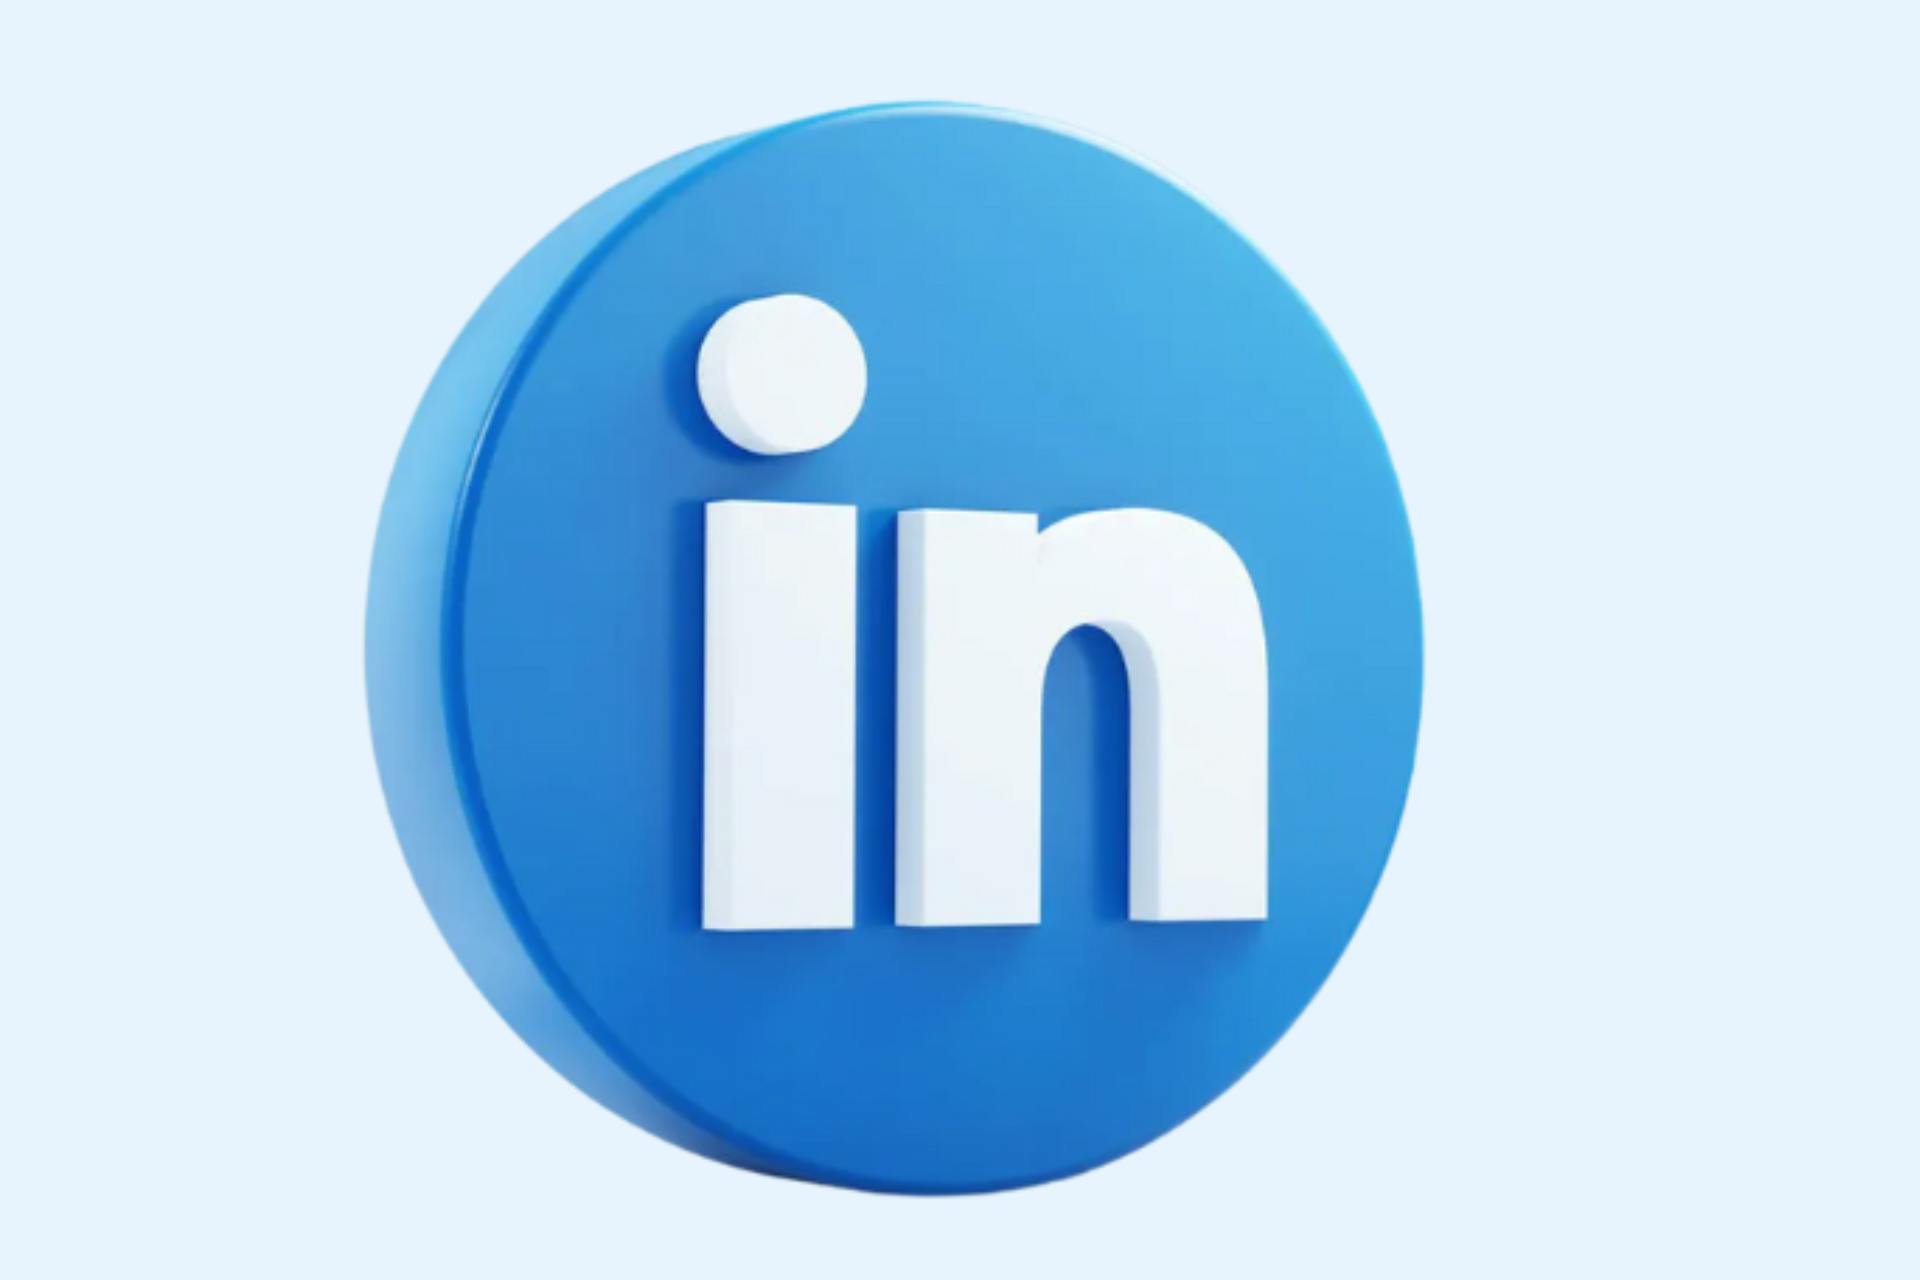 L'image a un fond bleu clair et le logo LinkedIn est visible au centre.